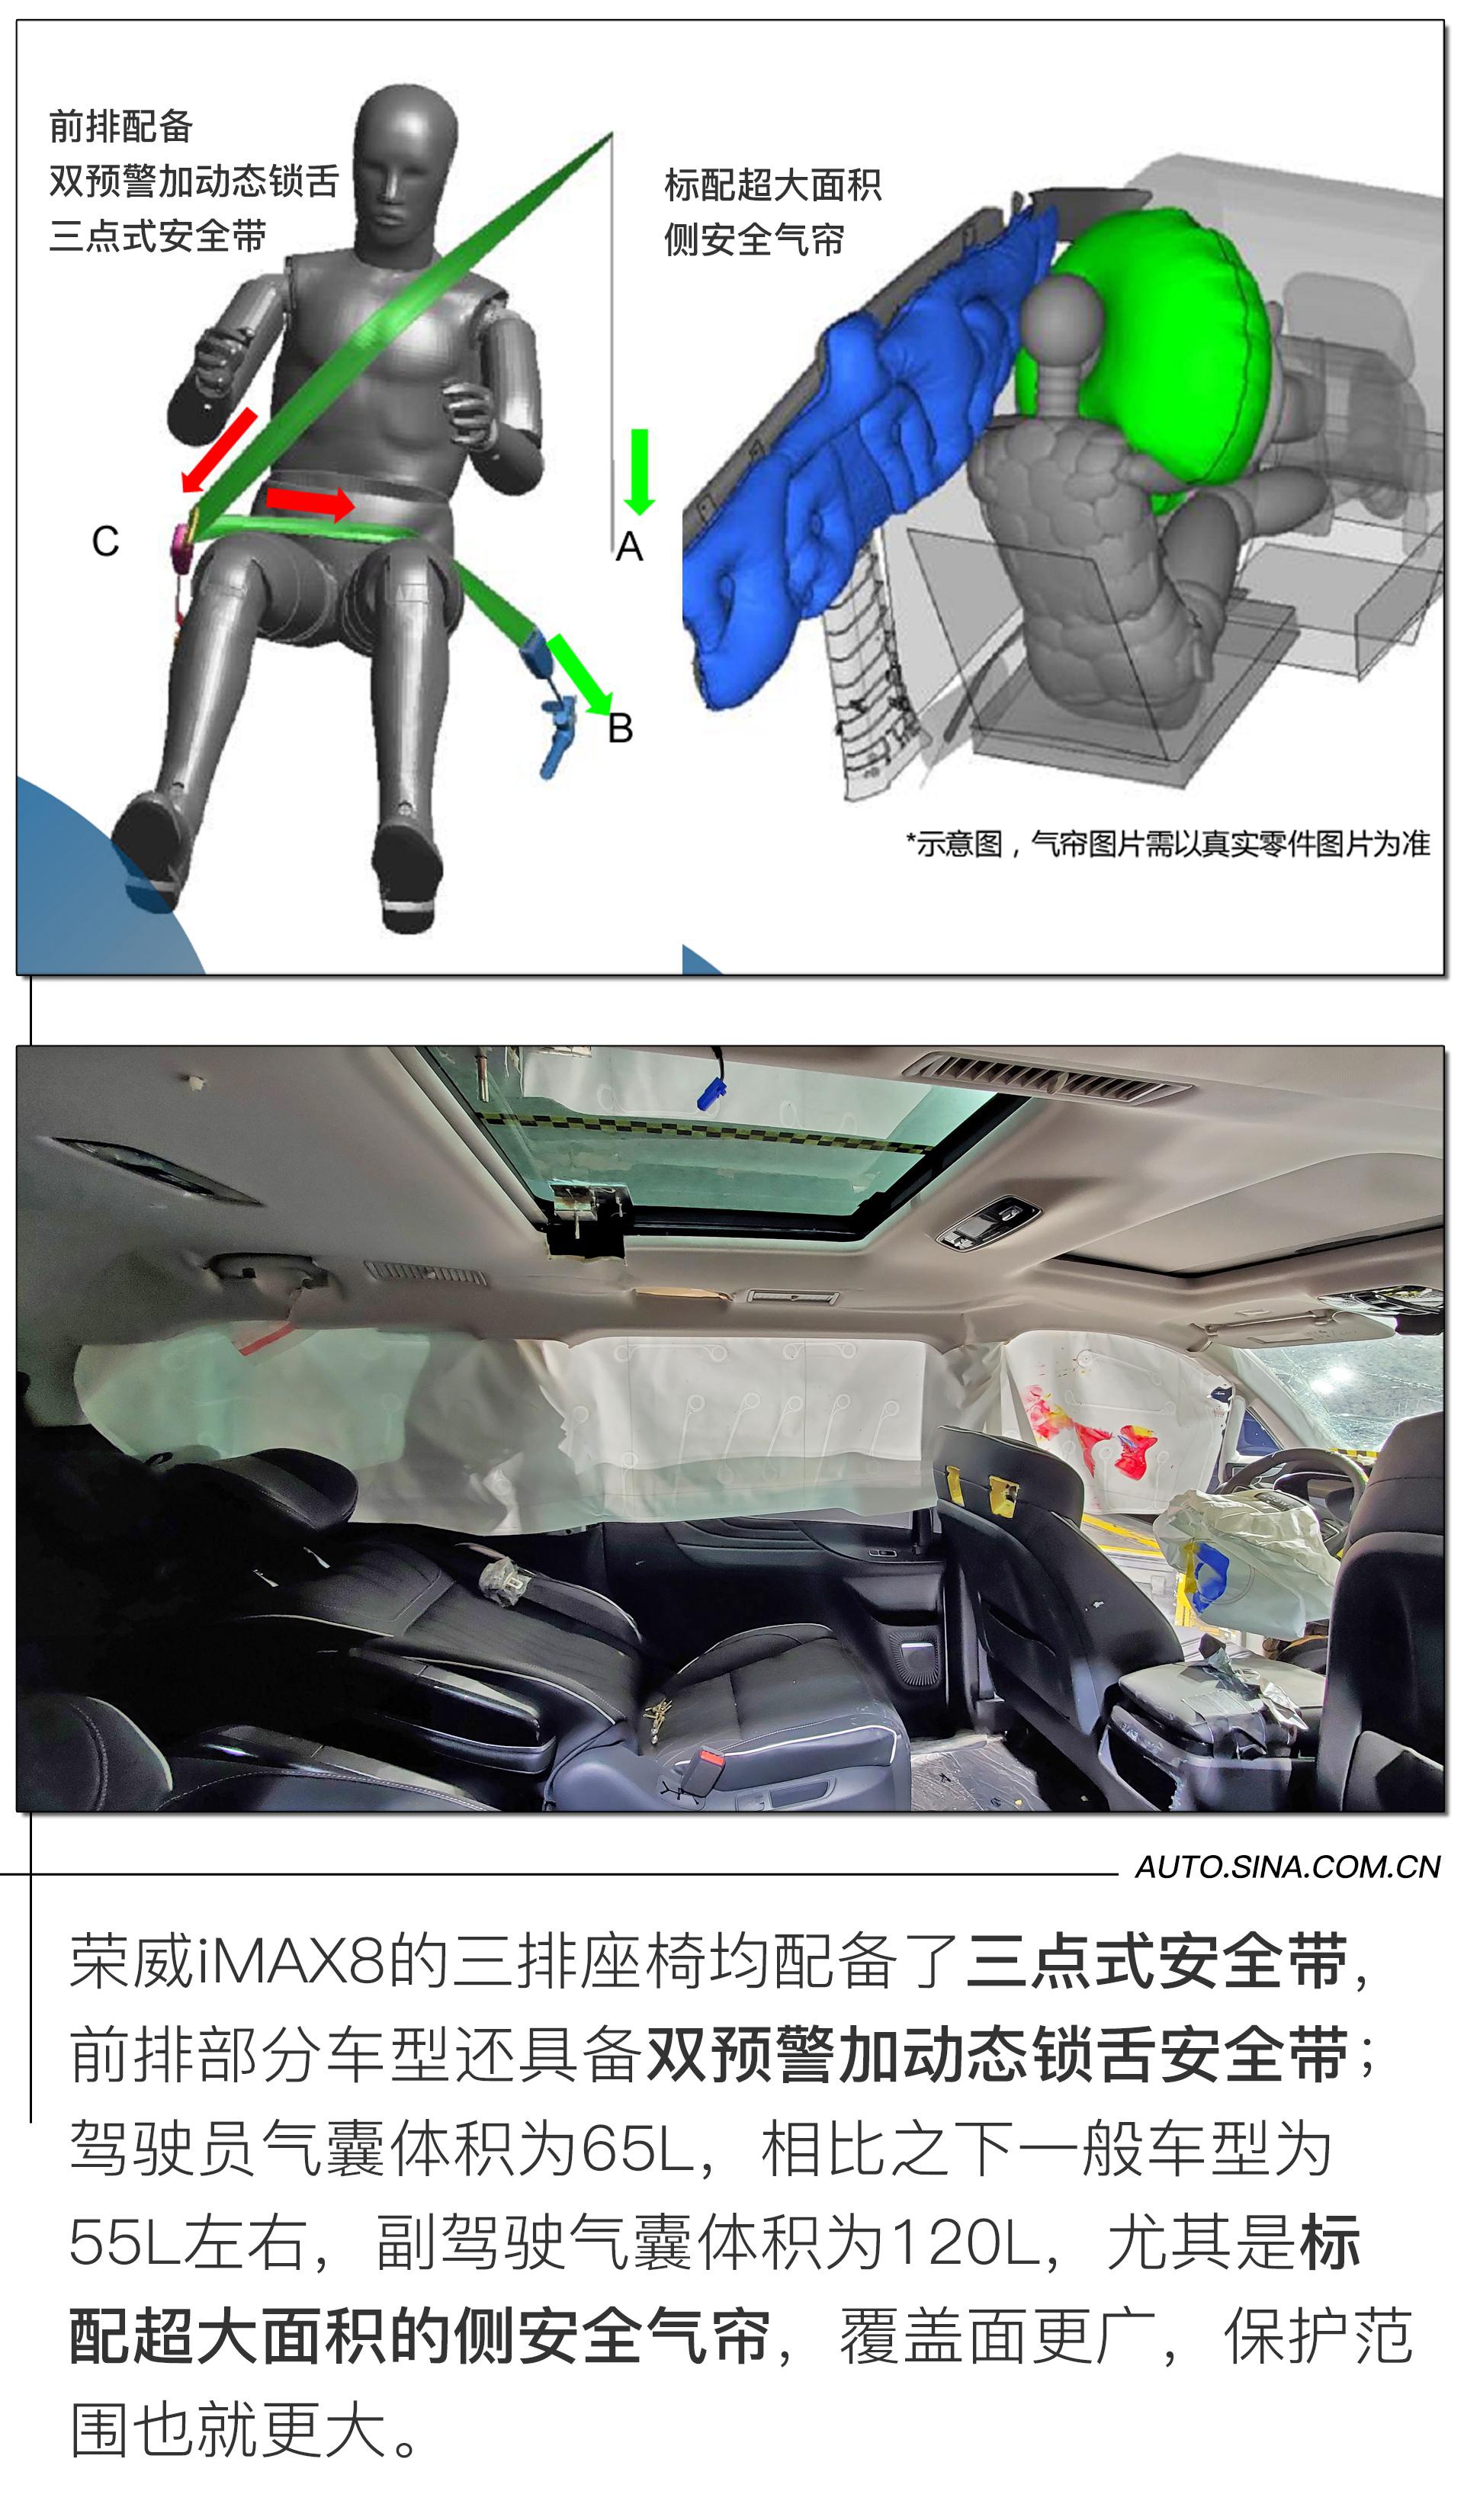 刷新MPV车型碰撞安全最好成绩 荣威iMAX8是如何做到的